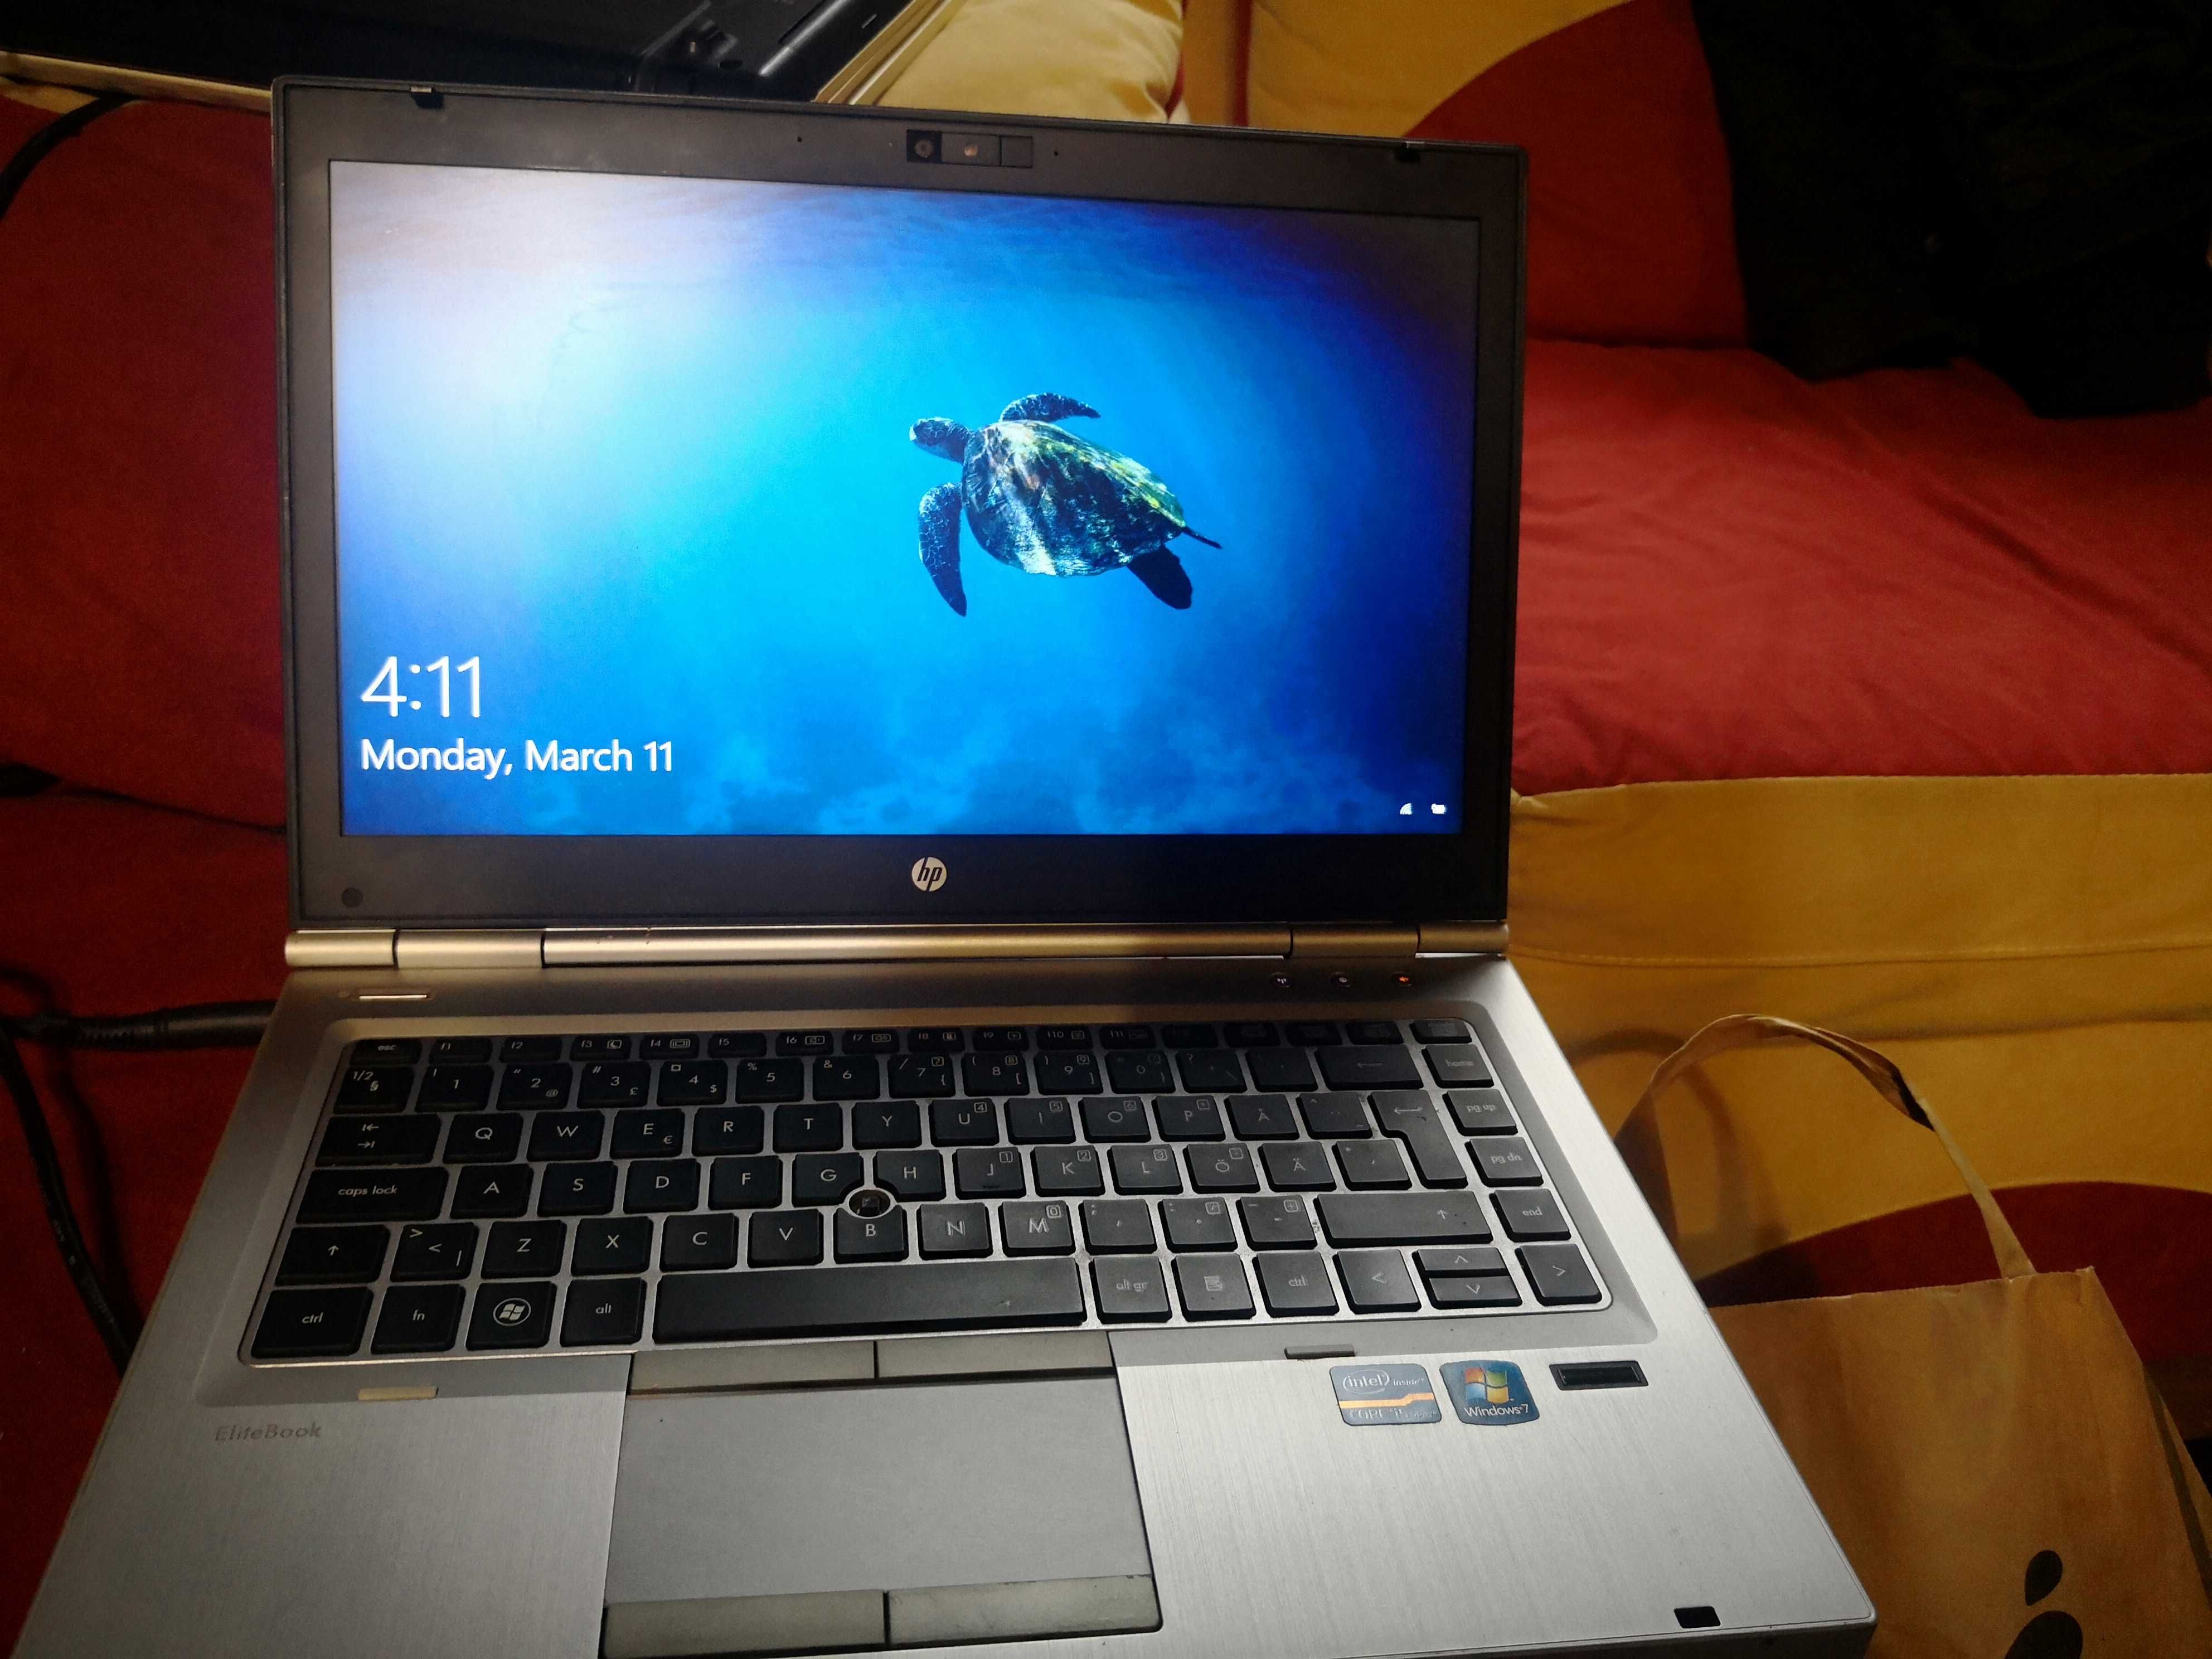 Laptop - Tableta 2 in 1 Acer One S1002 procesor Intel Atom Z3735F 1.83